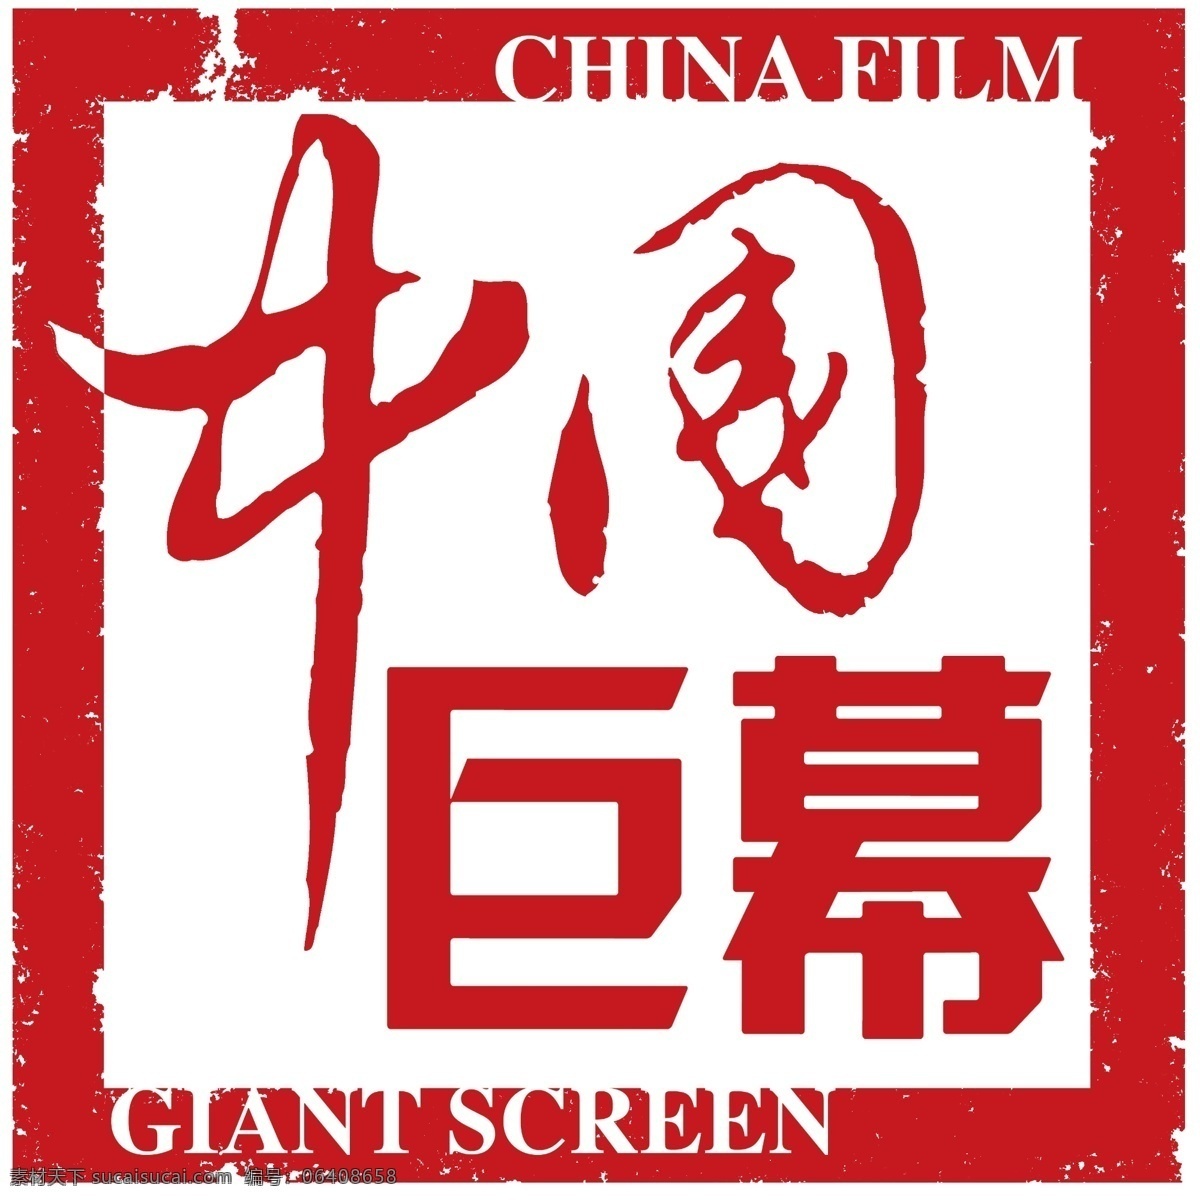 中国巨幕 中国 巨幕 logo 章 分层 源文件